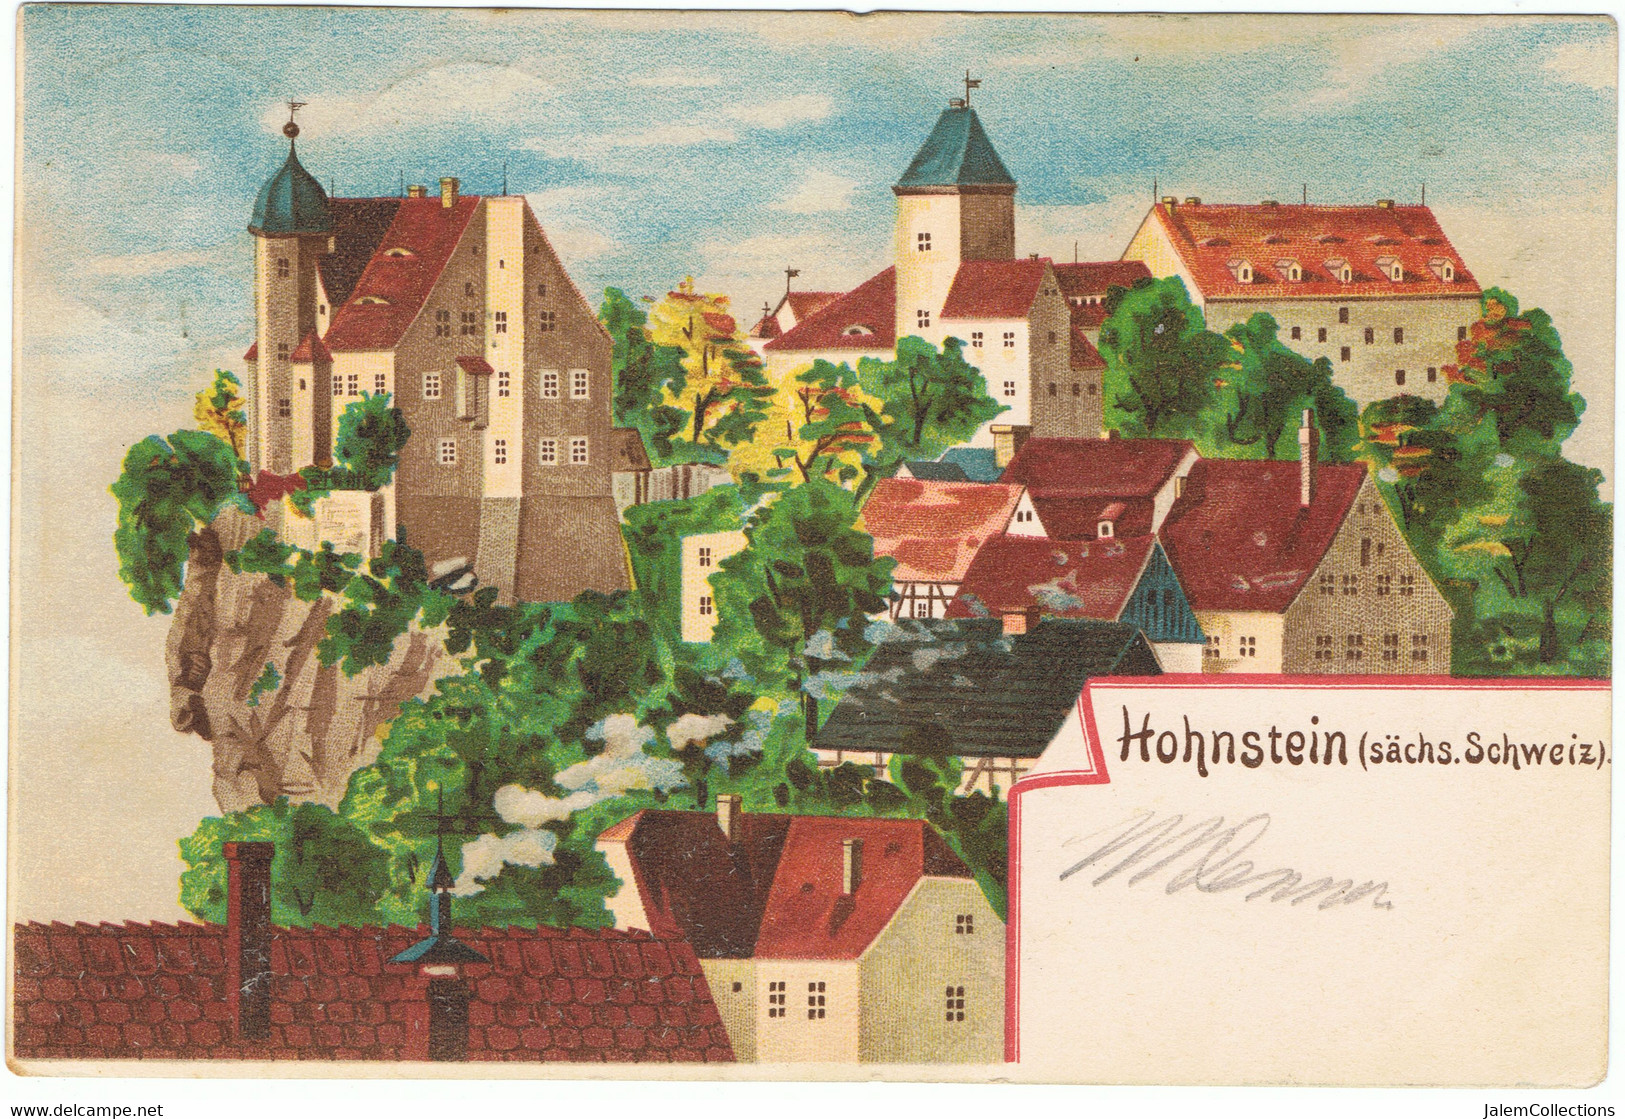 Hohnstein (sächs. Schweiz) - Hohnstein (Saechs. Schweiz)